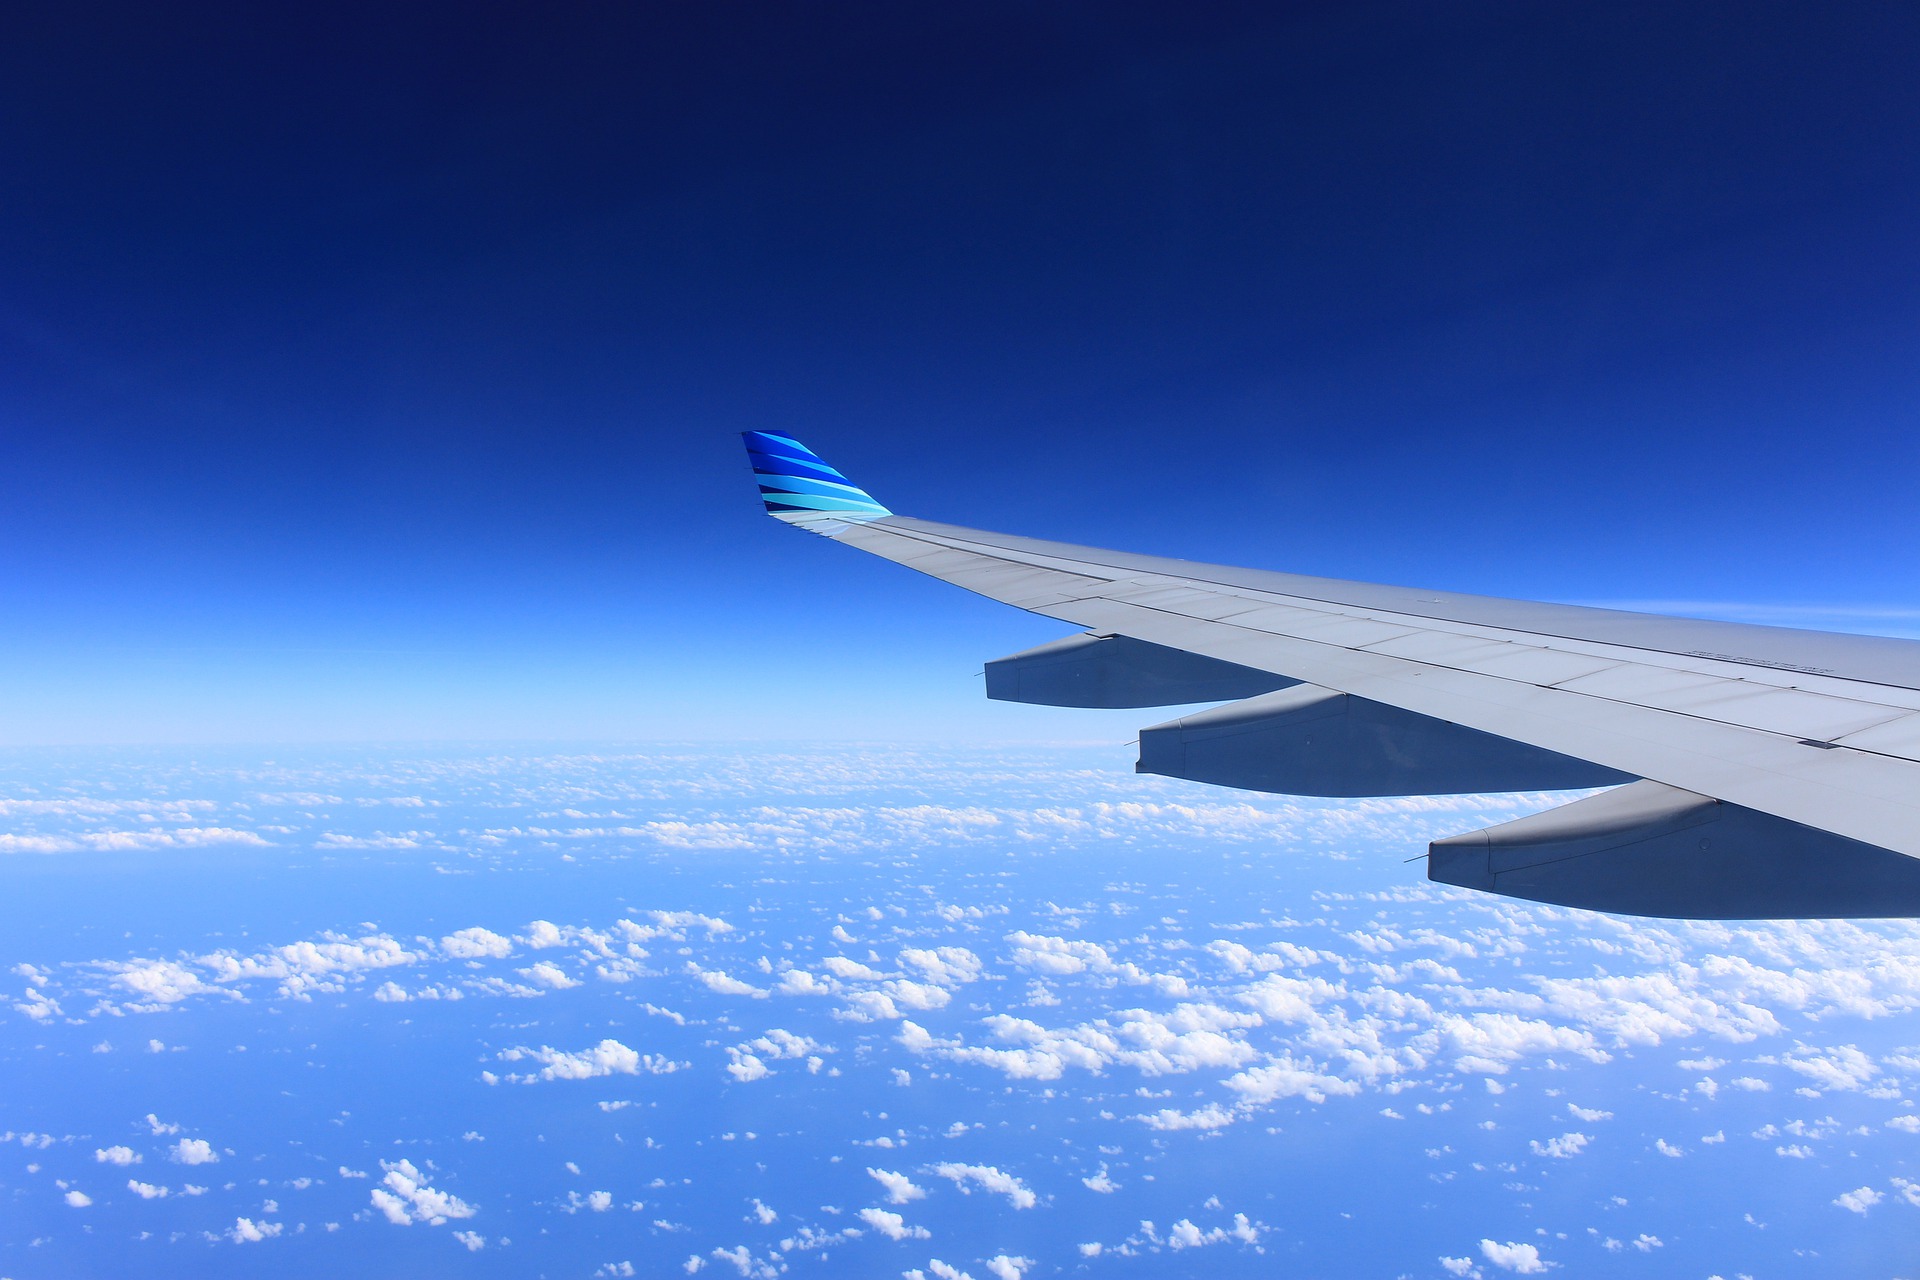 飛行機 スマホで音楽を聴く方法 Wi Fiは使える おすすめ方法紹介 オトアサリビト